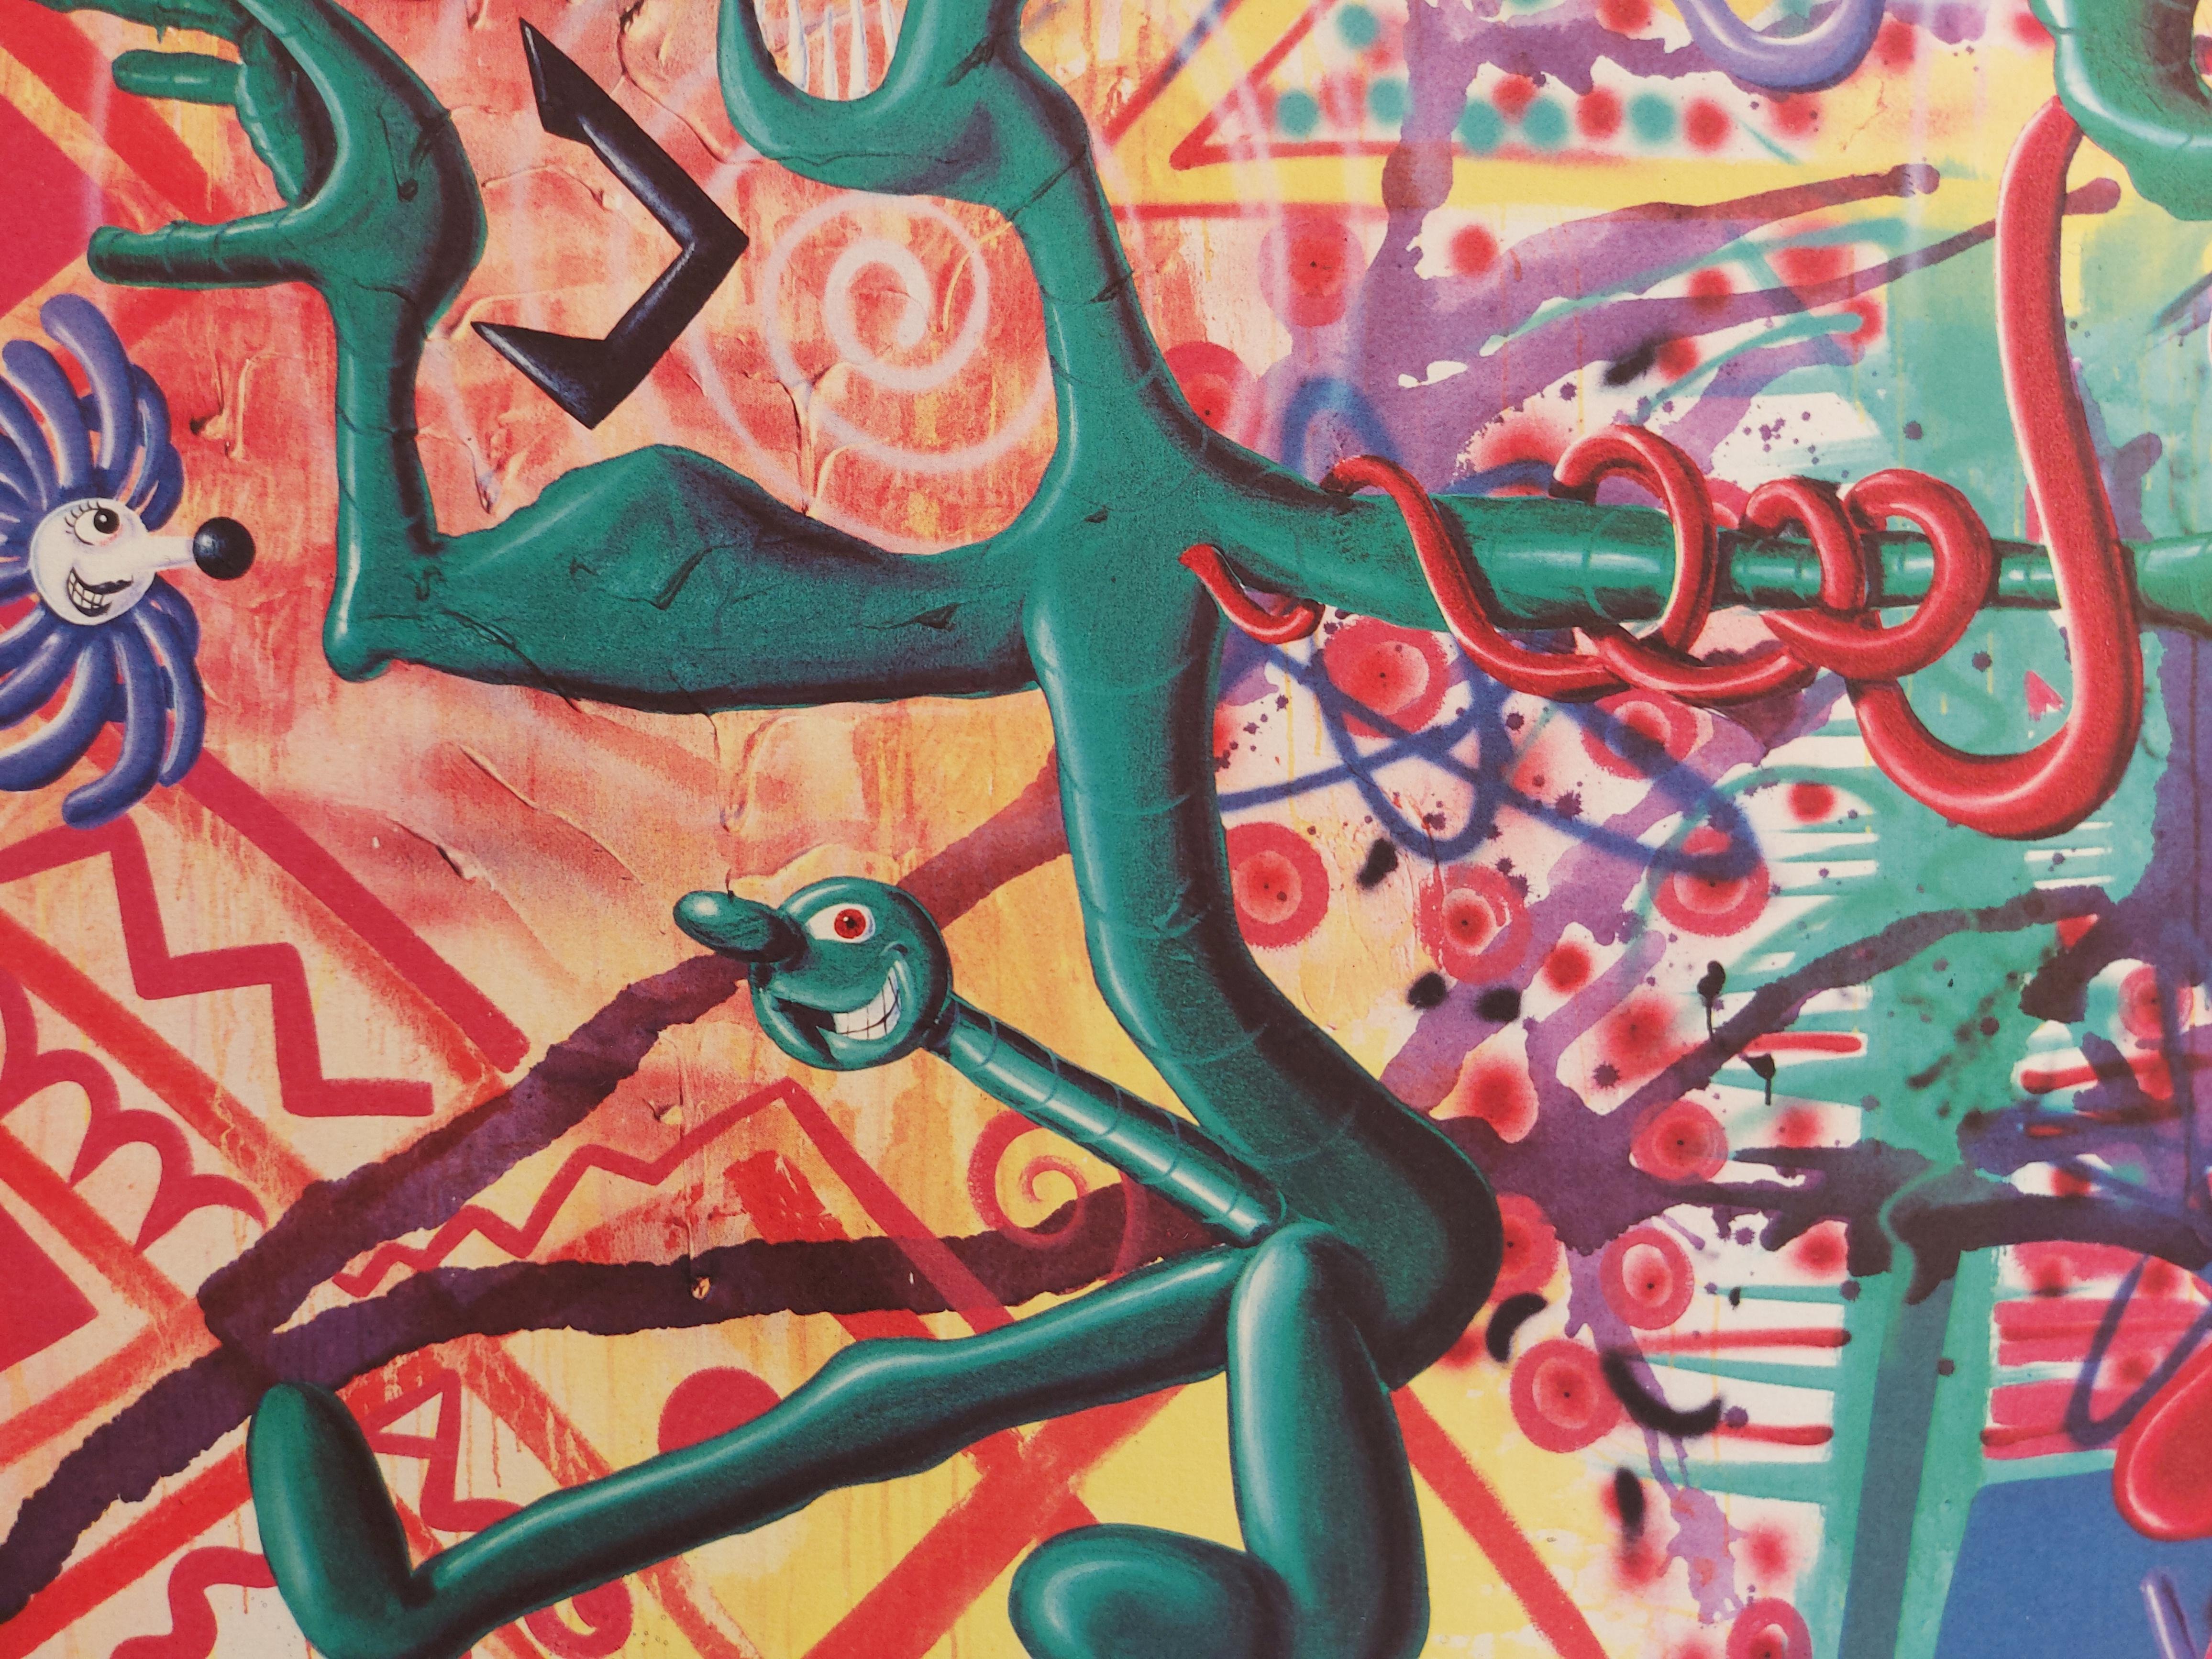 Kenny Scharf
Rattenfinkbonerthunk : Surrealistische Ratte, 1990

Original Giclée Druck
Handsigniert mit Bleistift
Auf Arches-Pergament 56 x 76 cm (ca. 22 x 30 Zoll)
Veröffentlicht von Editions Vermorel im Jahr 1990

Ausgezeichneter Zustand